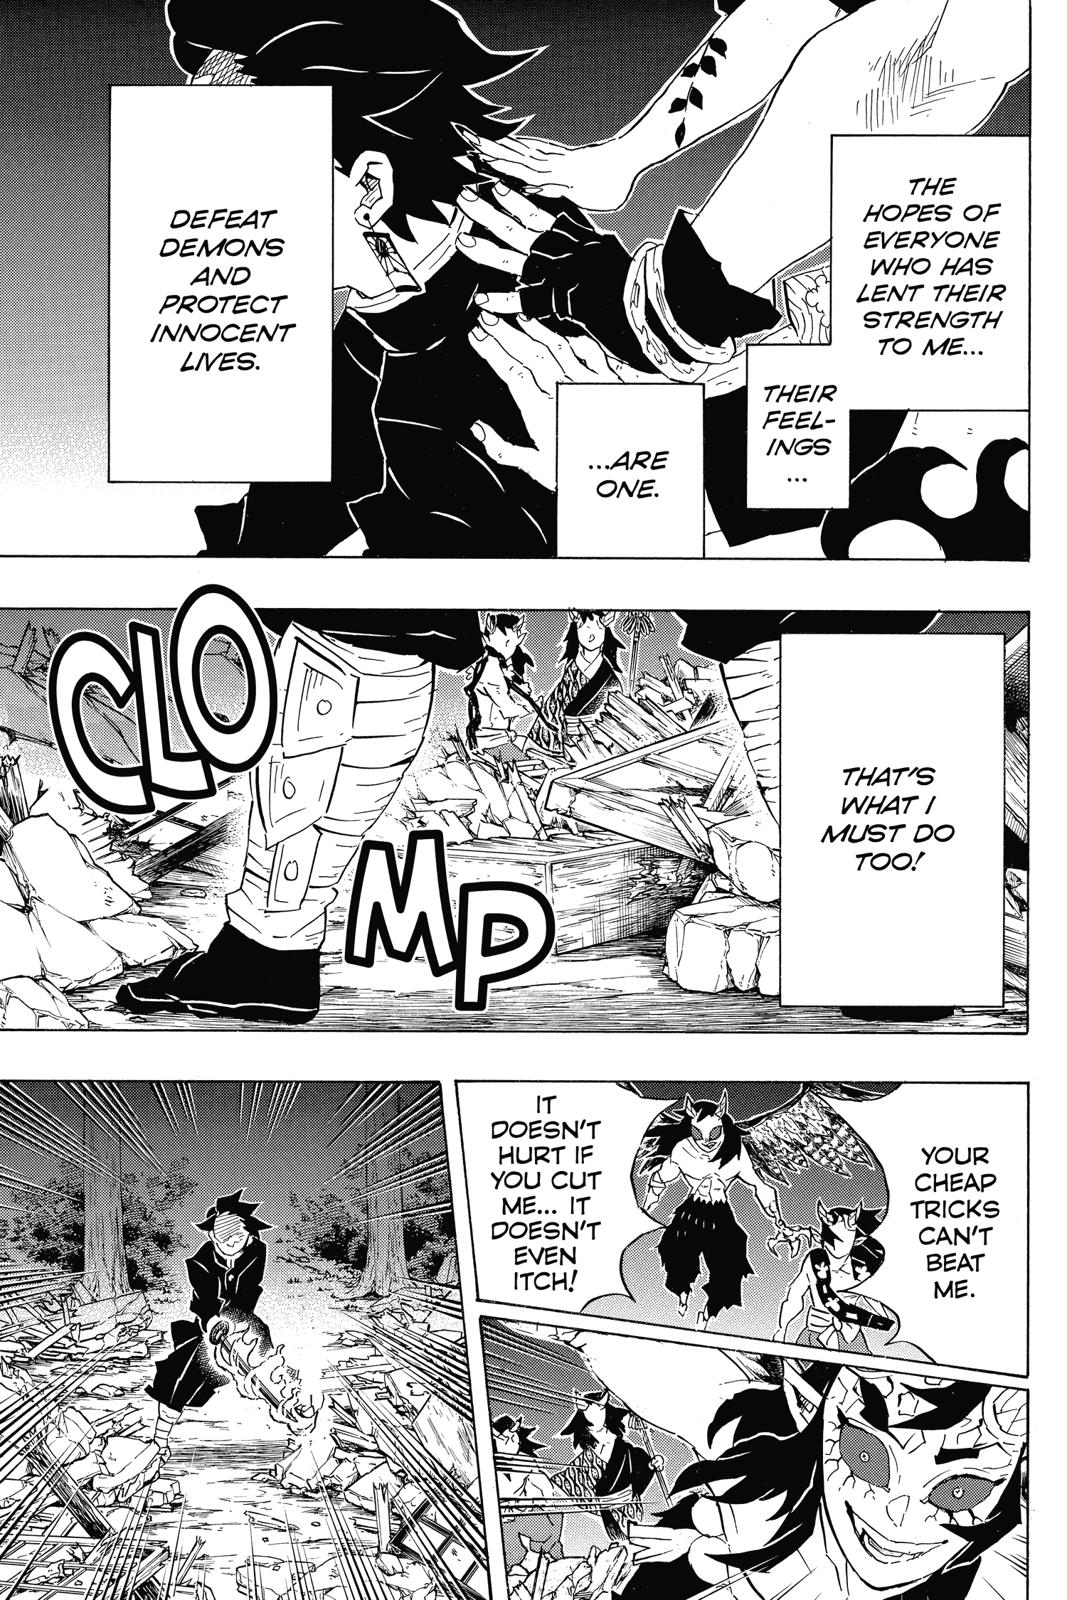 Demon Slayer Manga Manga Chapter - 113 - image 5